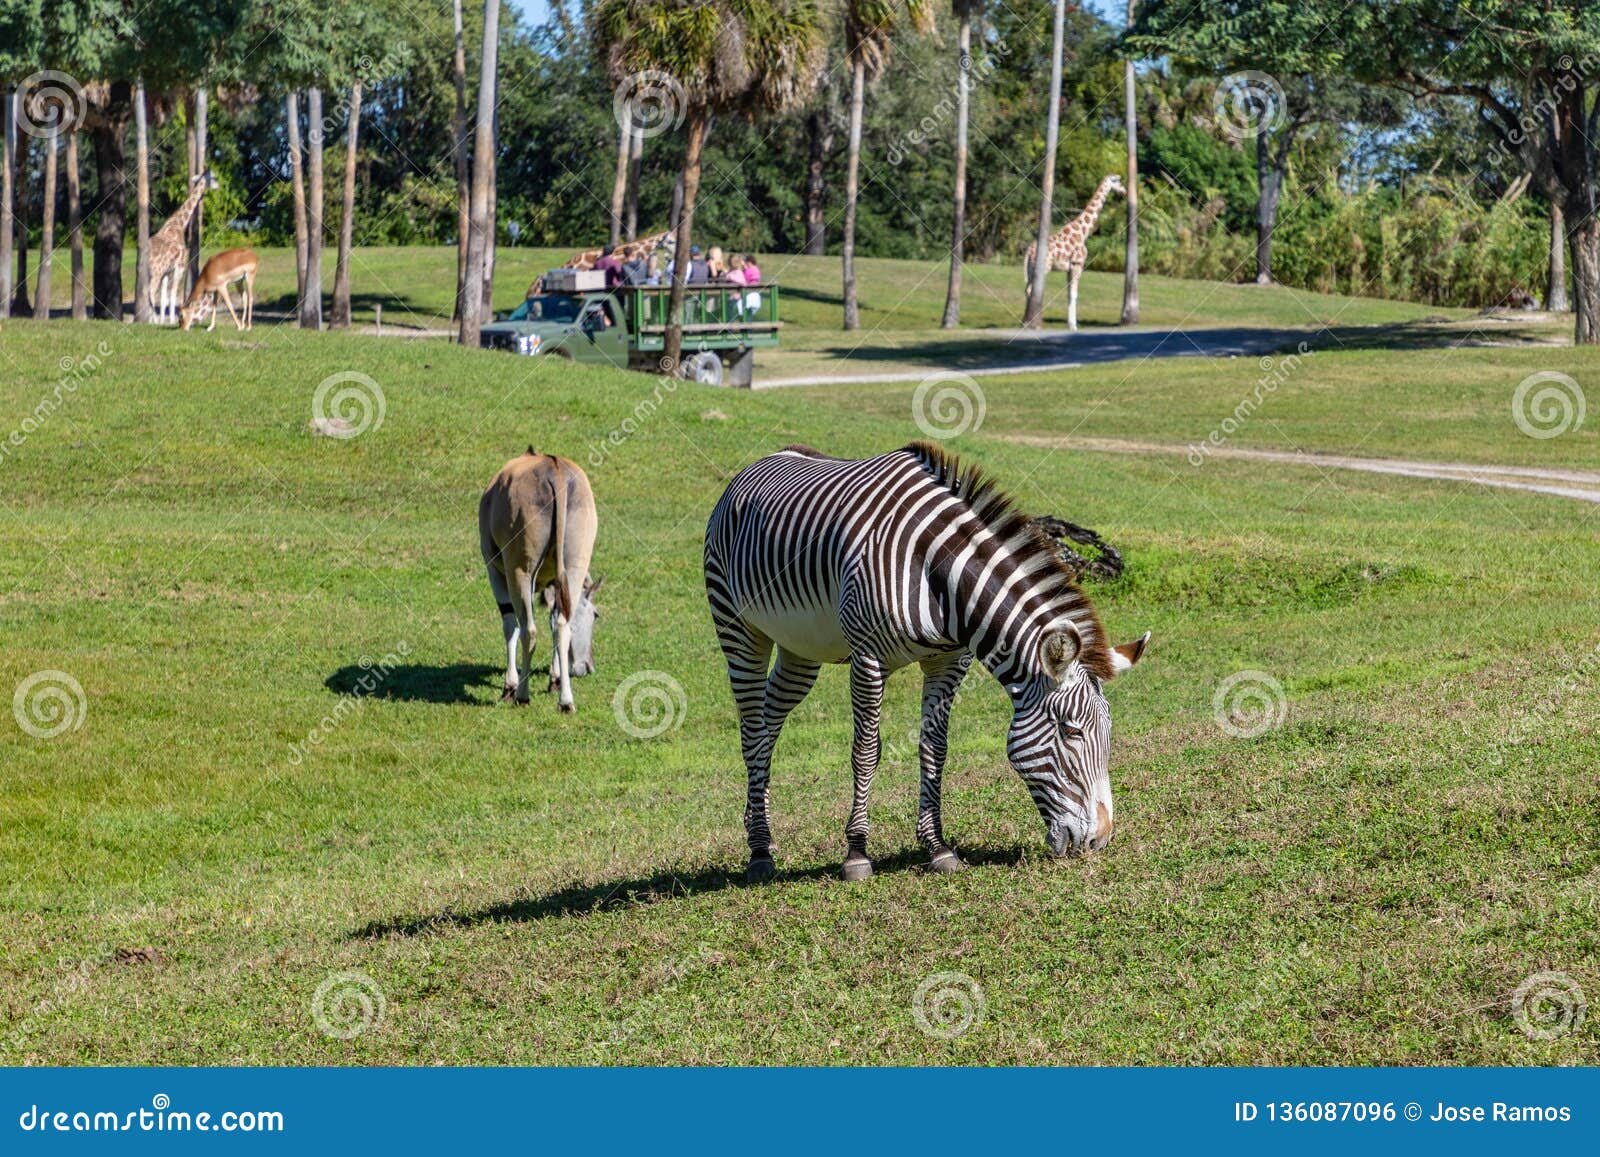 Recinzione di safari con le zebre e le giraffe. Paesaggio tranquillo di un campo con i vari animali che fa parte di un safari